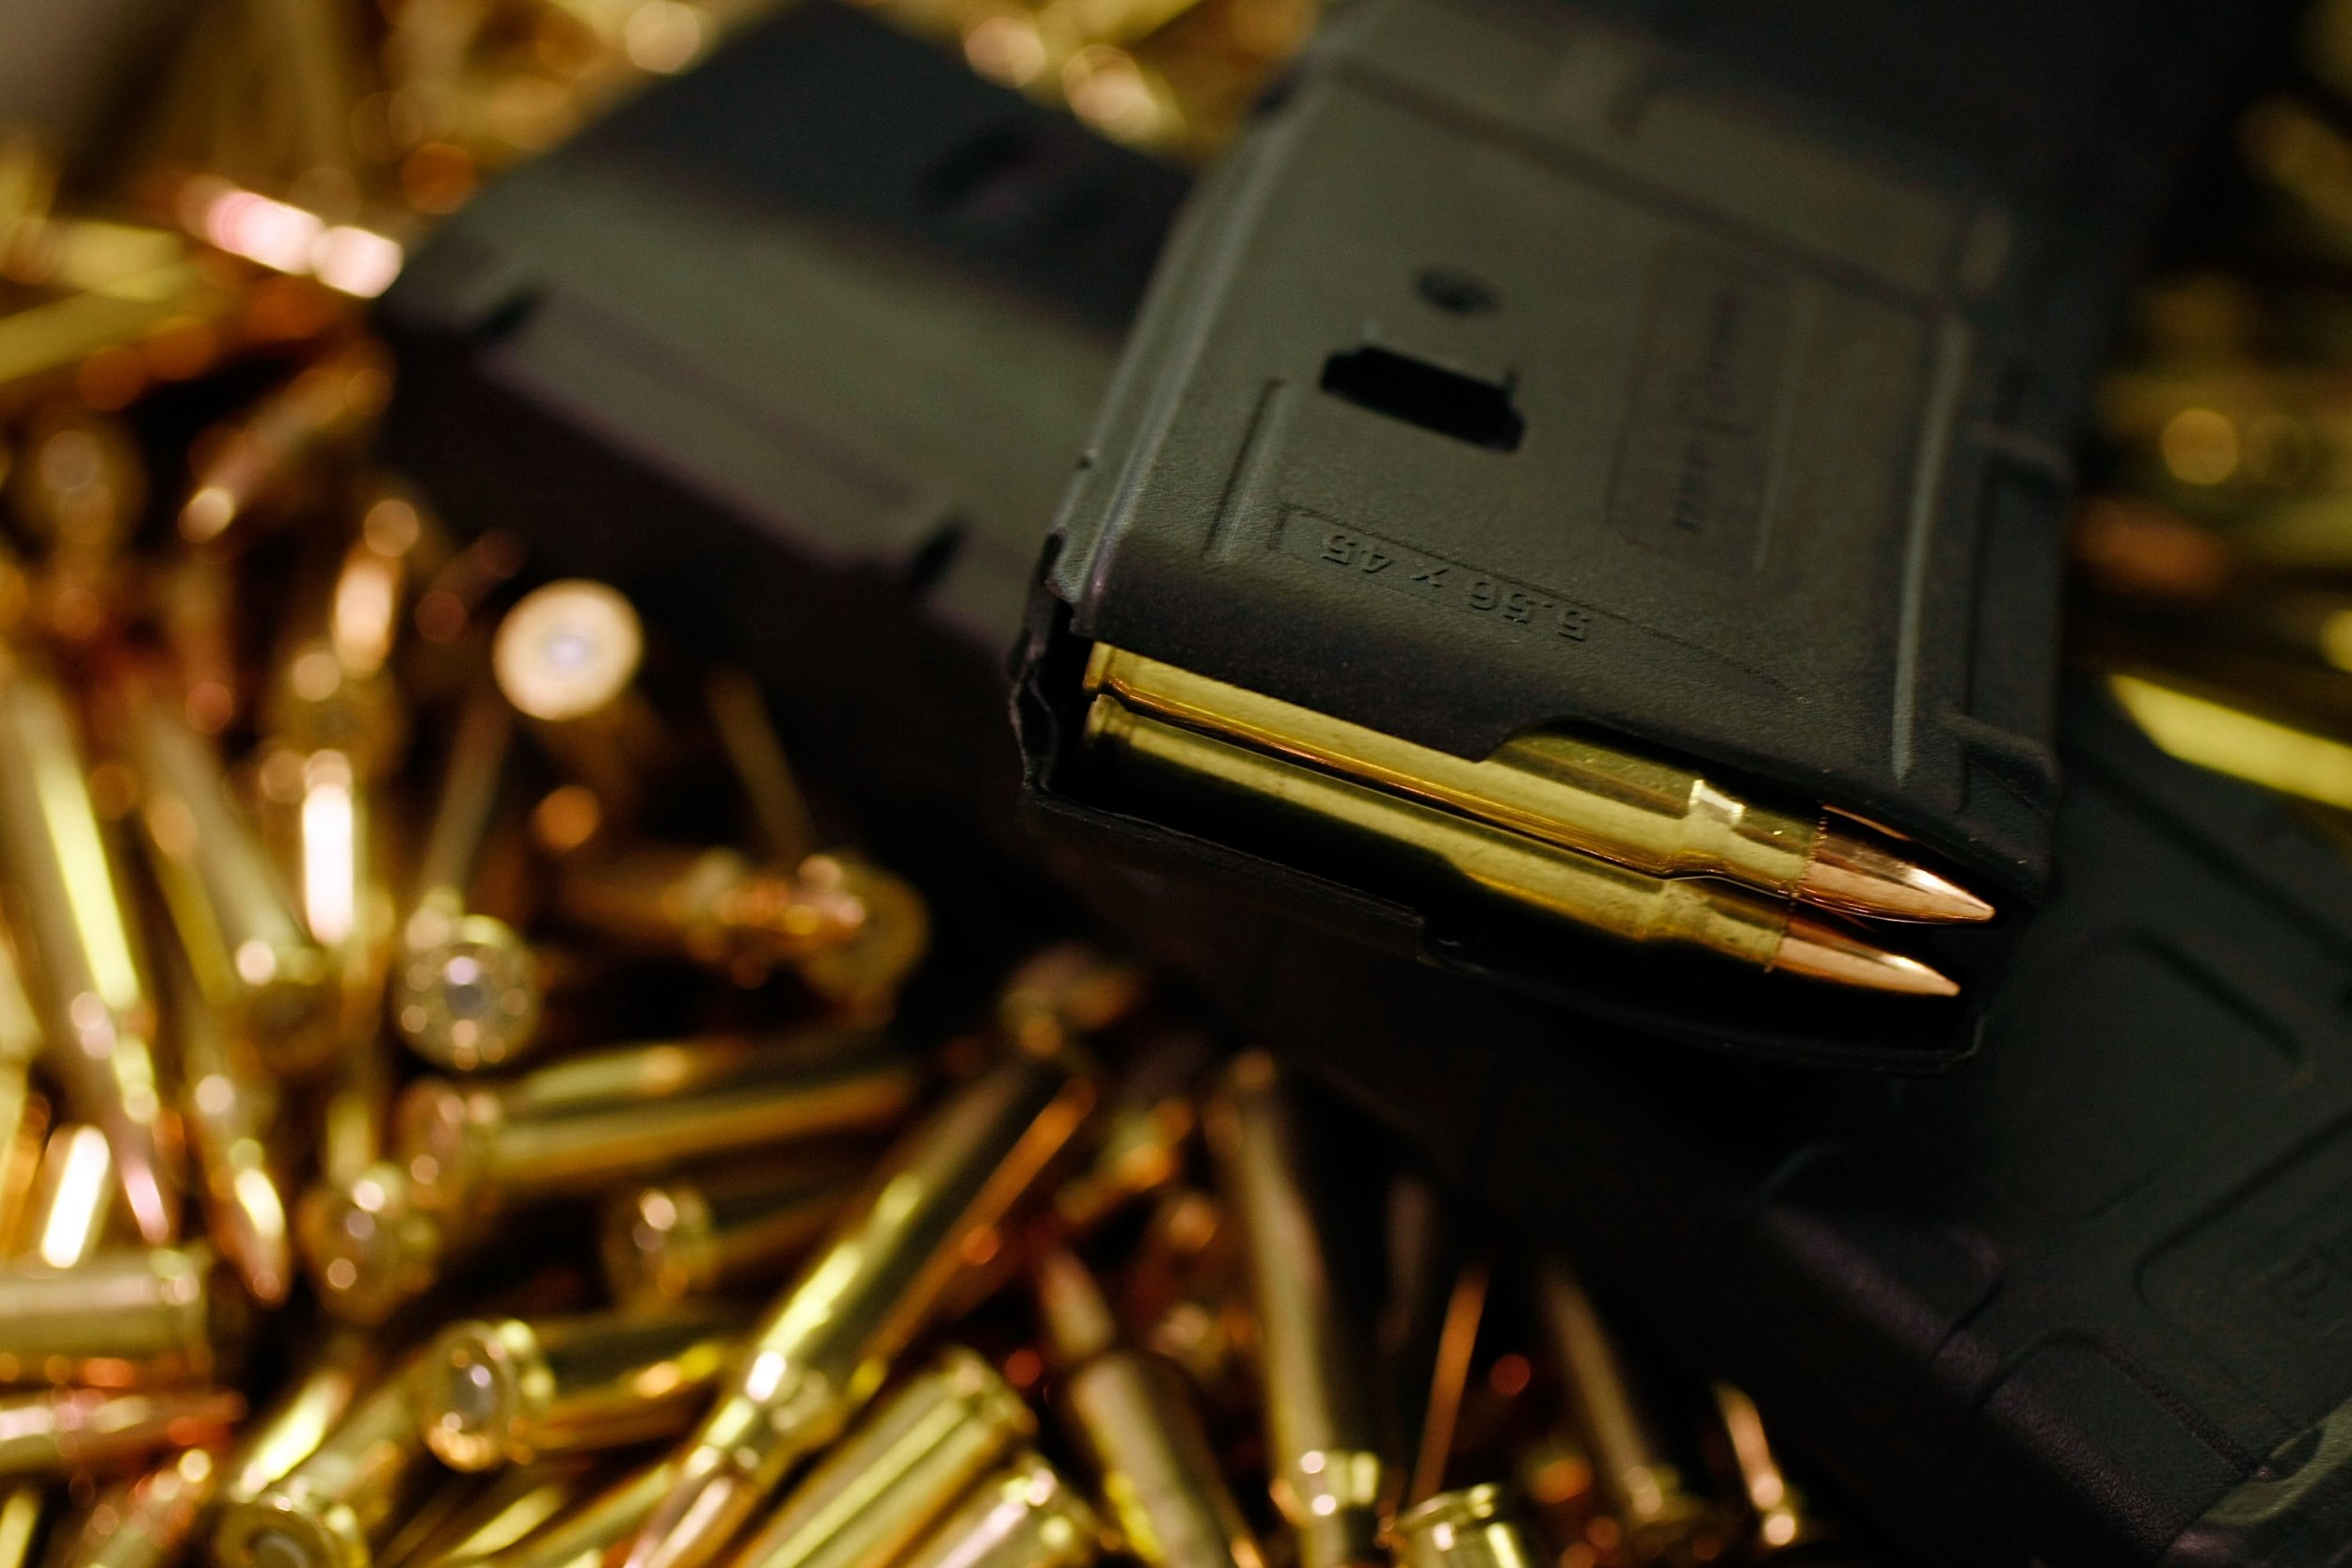 ammunition, firearms stolen from gun show in SC